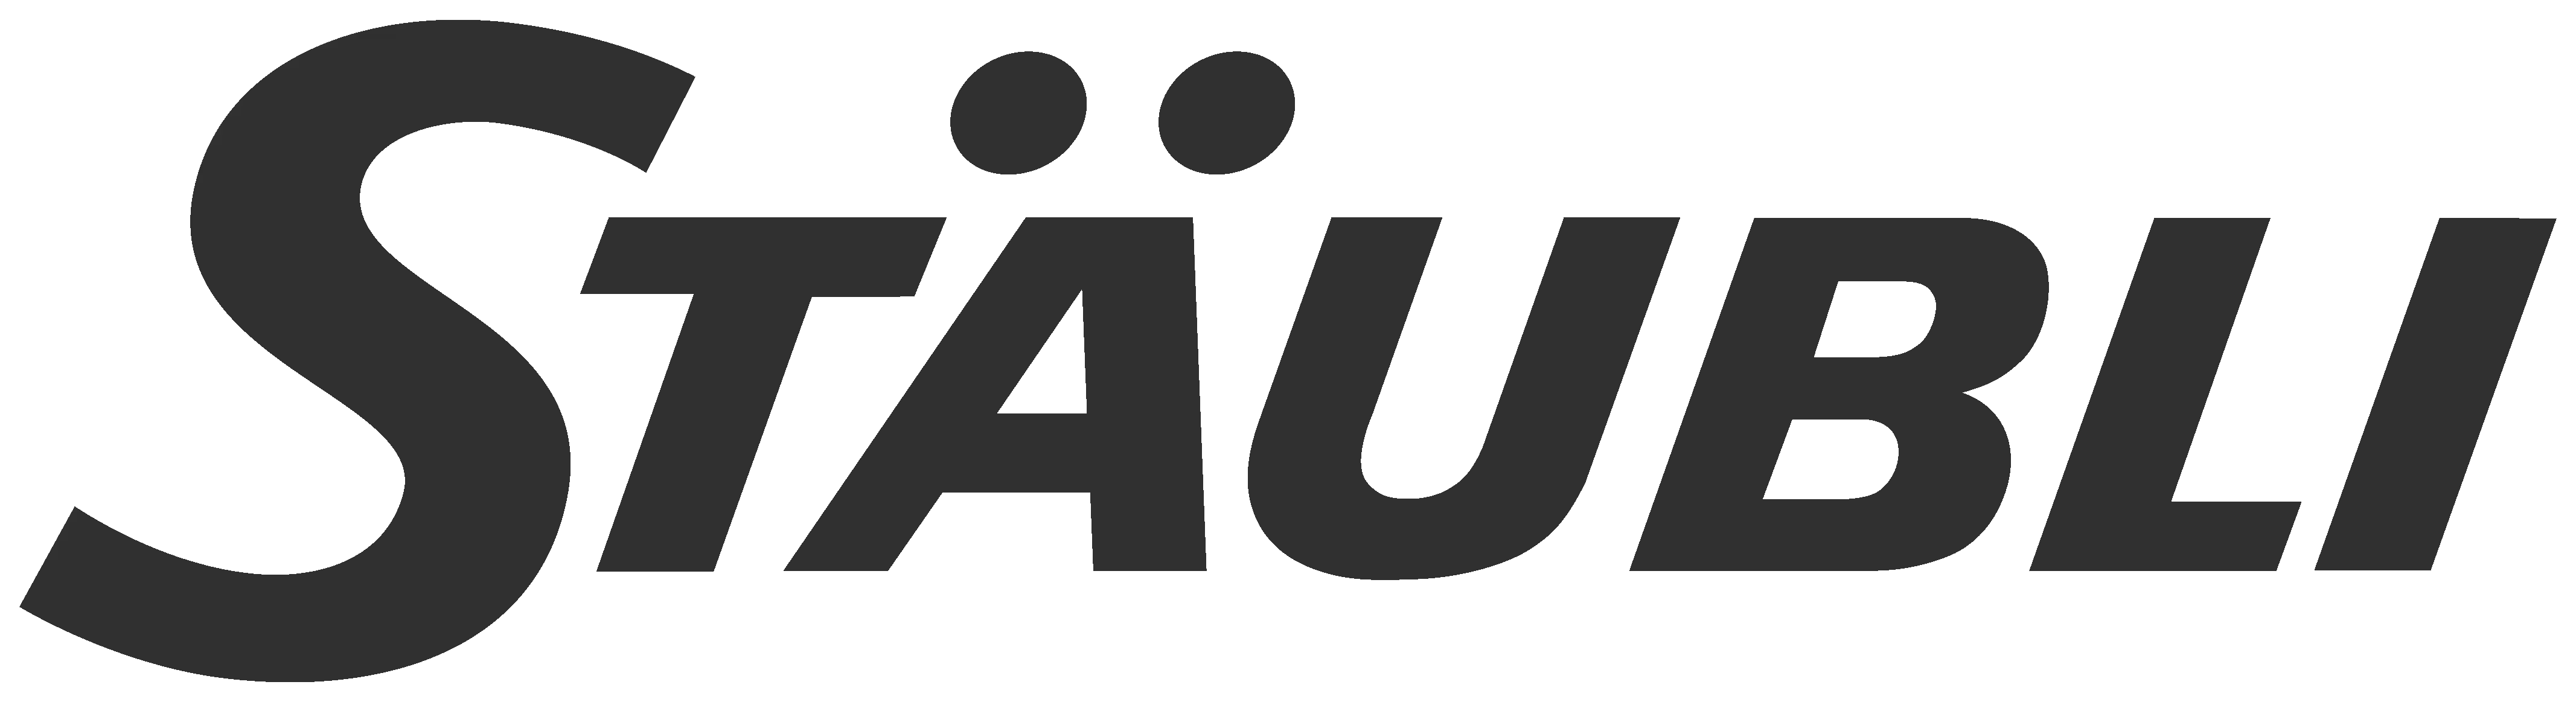 Stäubli_International_logo